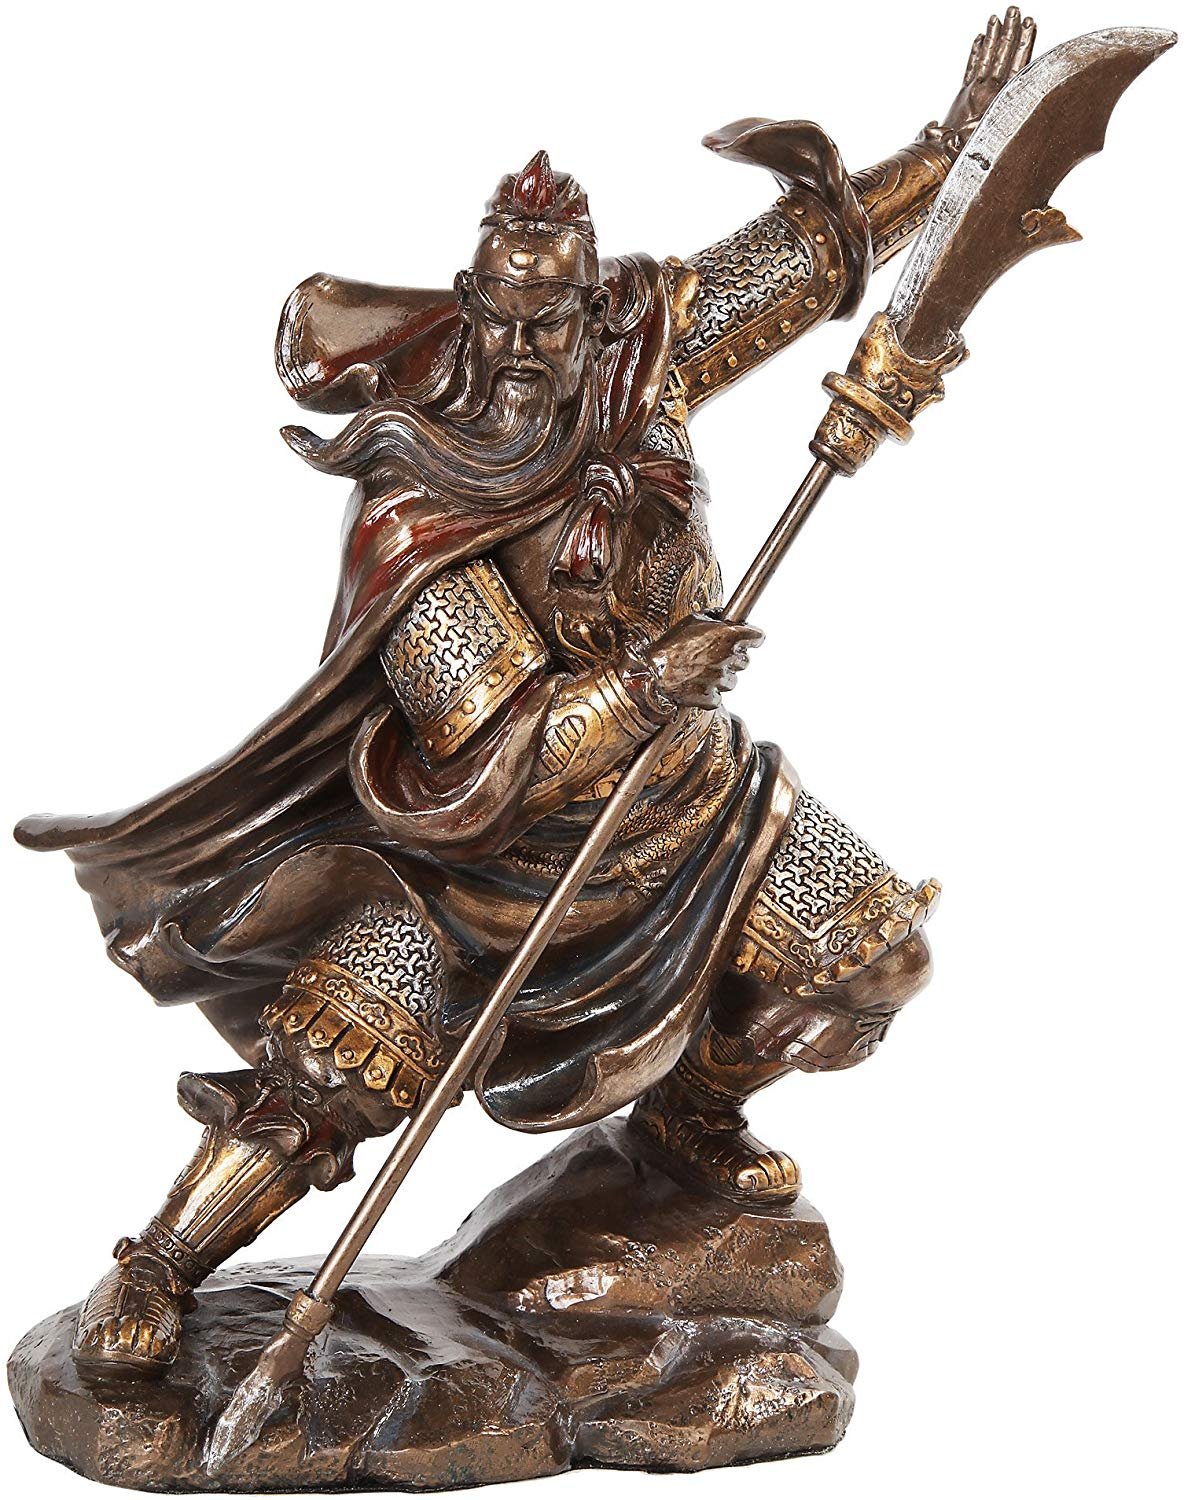 PTC 13 Inch Guan Yu Chinese Fighting Warrior Resin Statue Figurine